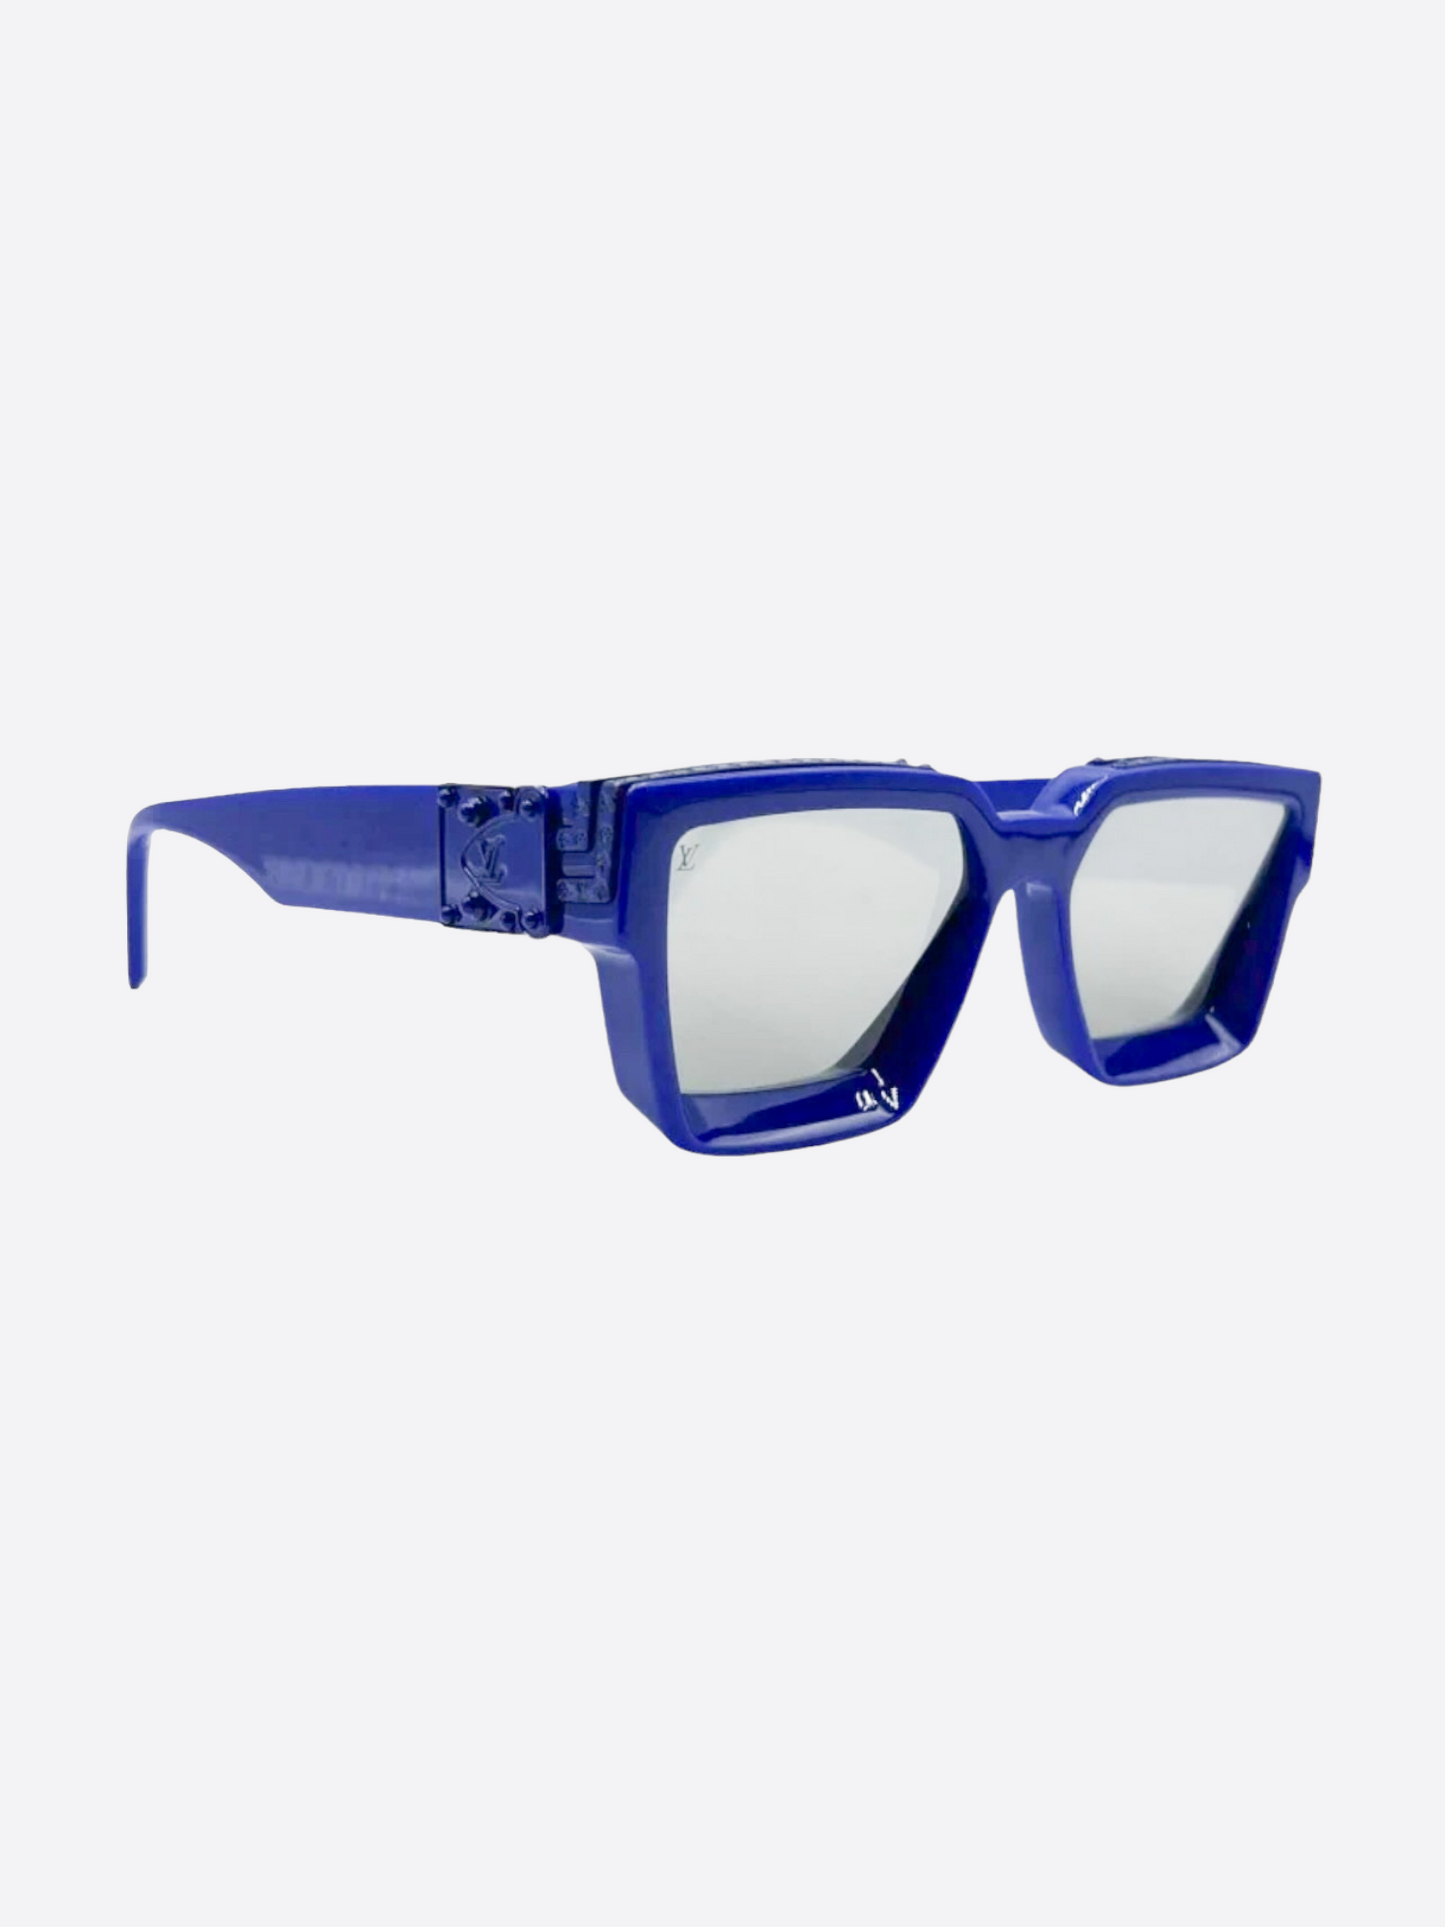 Louis Vuitton Sunglasses Millionaire 1.1 58 17 Z1359E Blue Marble excellent